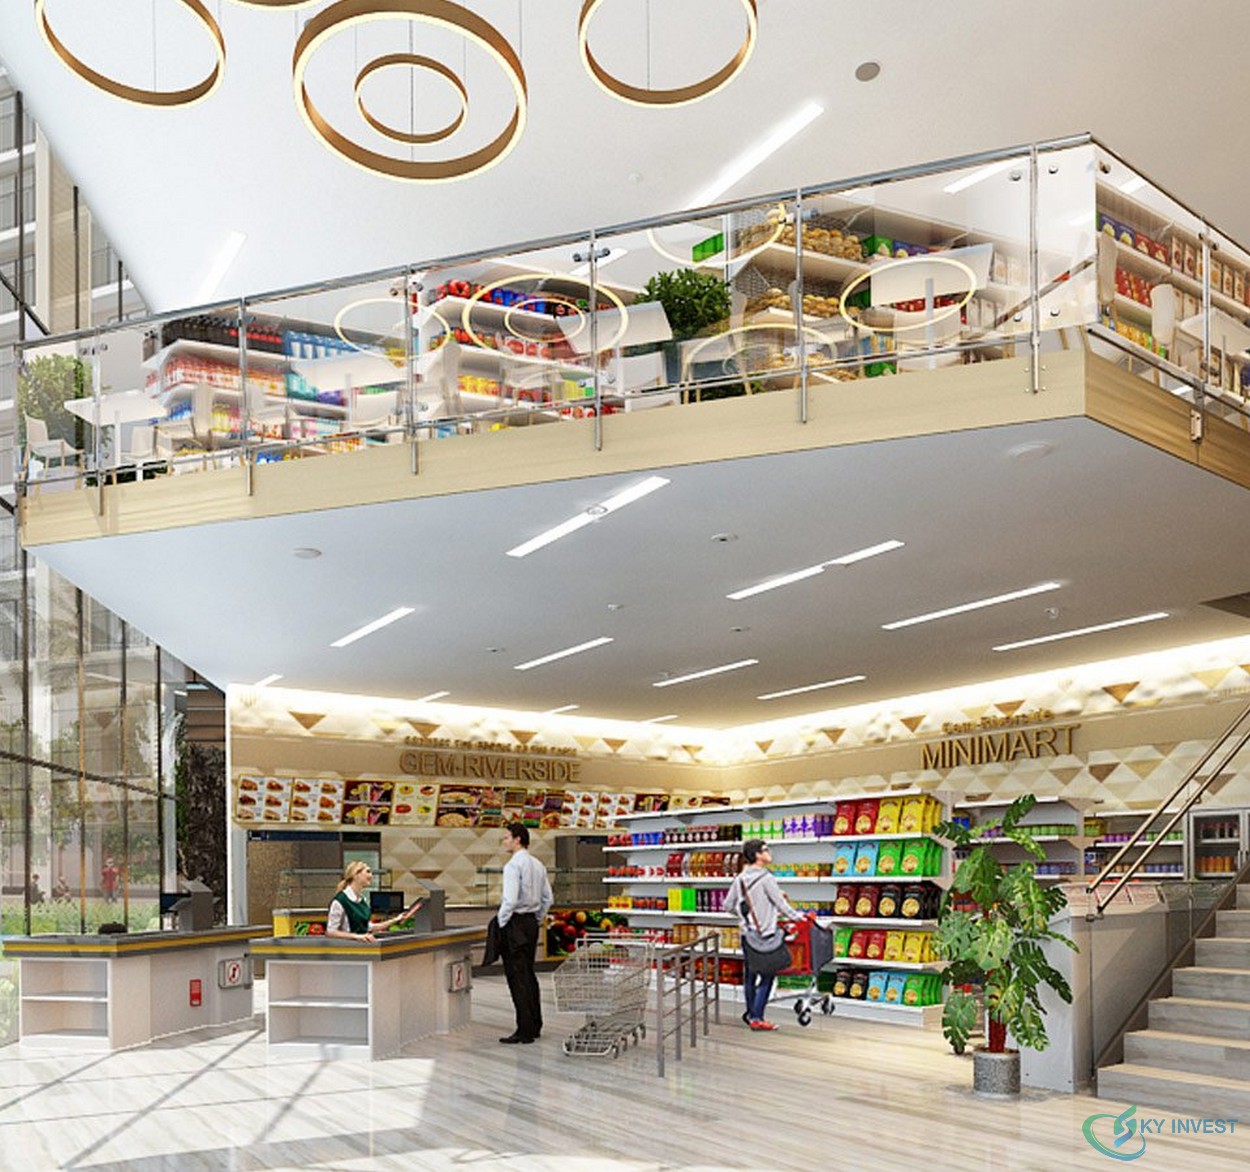 Tiện ích nội khu dự án căn hộ Datxanhhomes Riveriside - Hệ thống siêu thị hiện đại